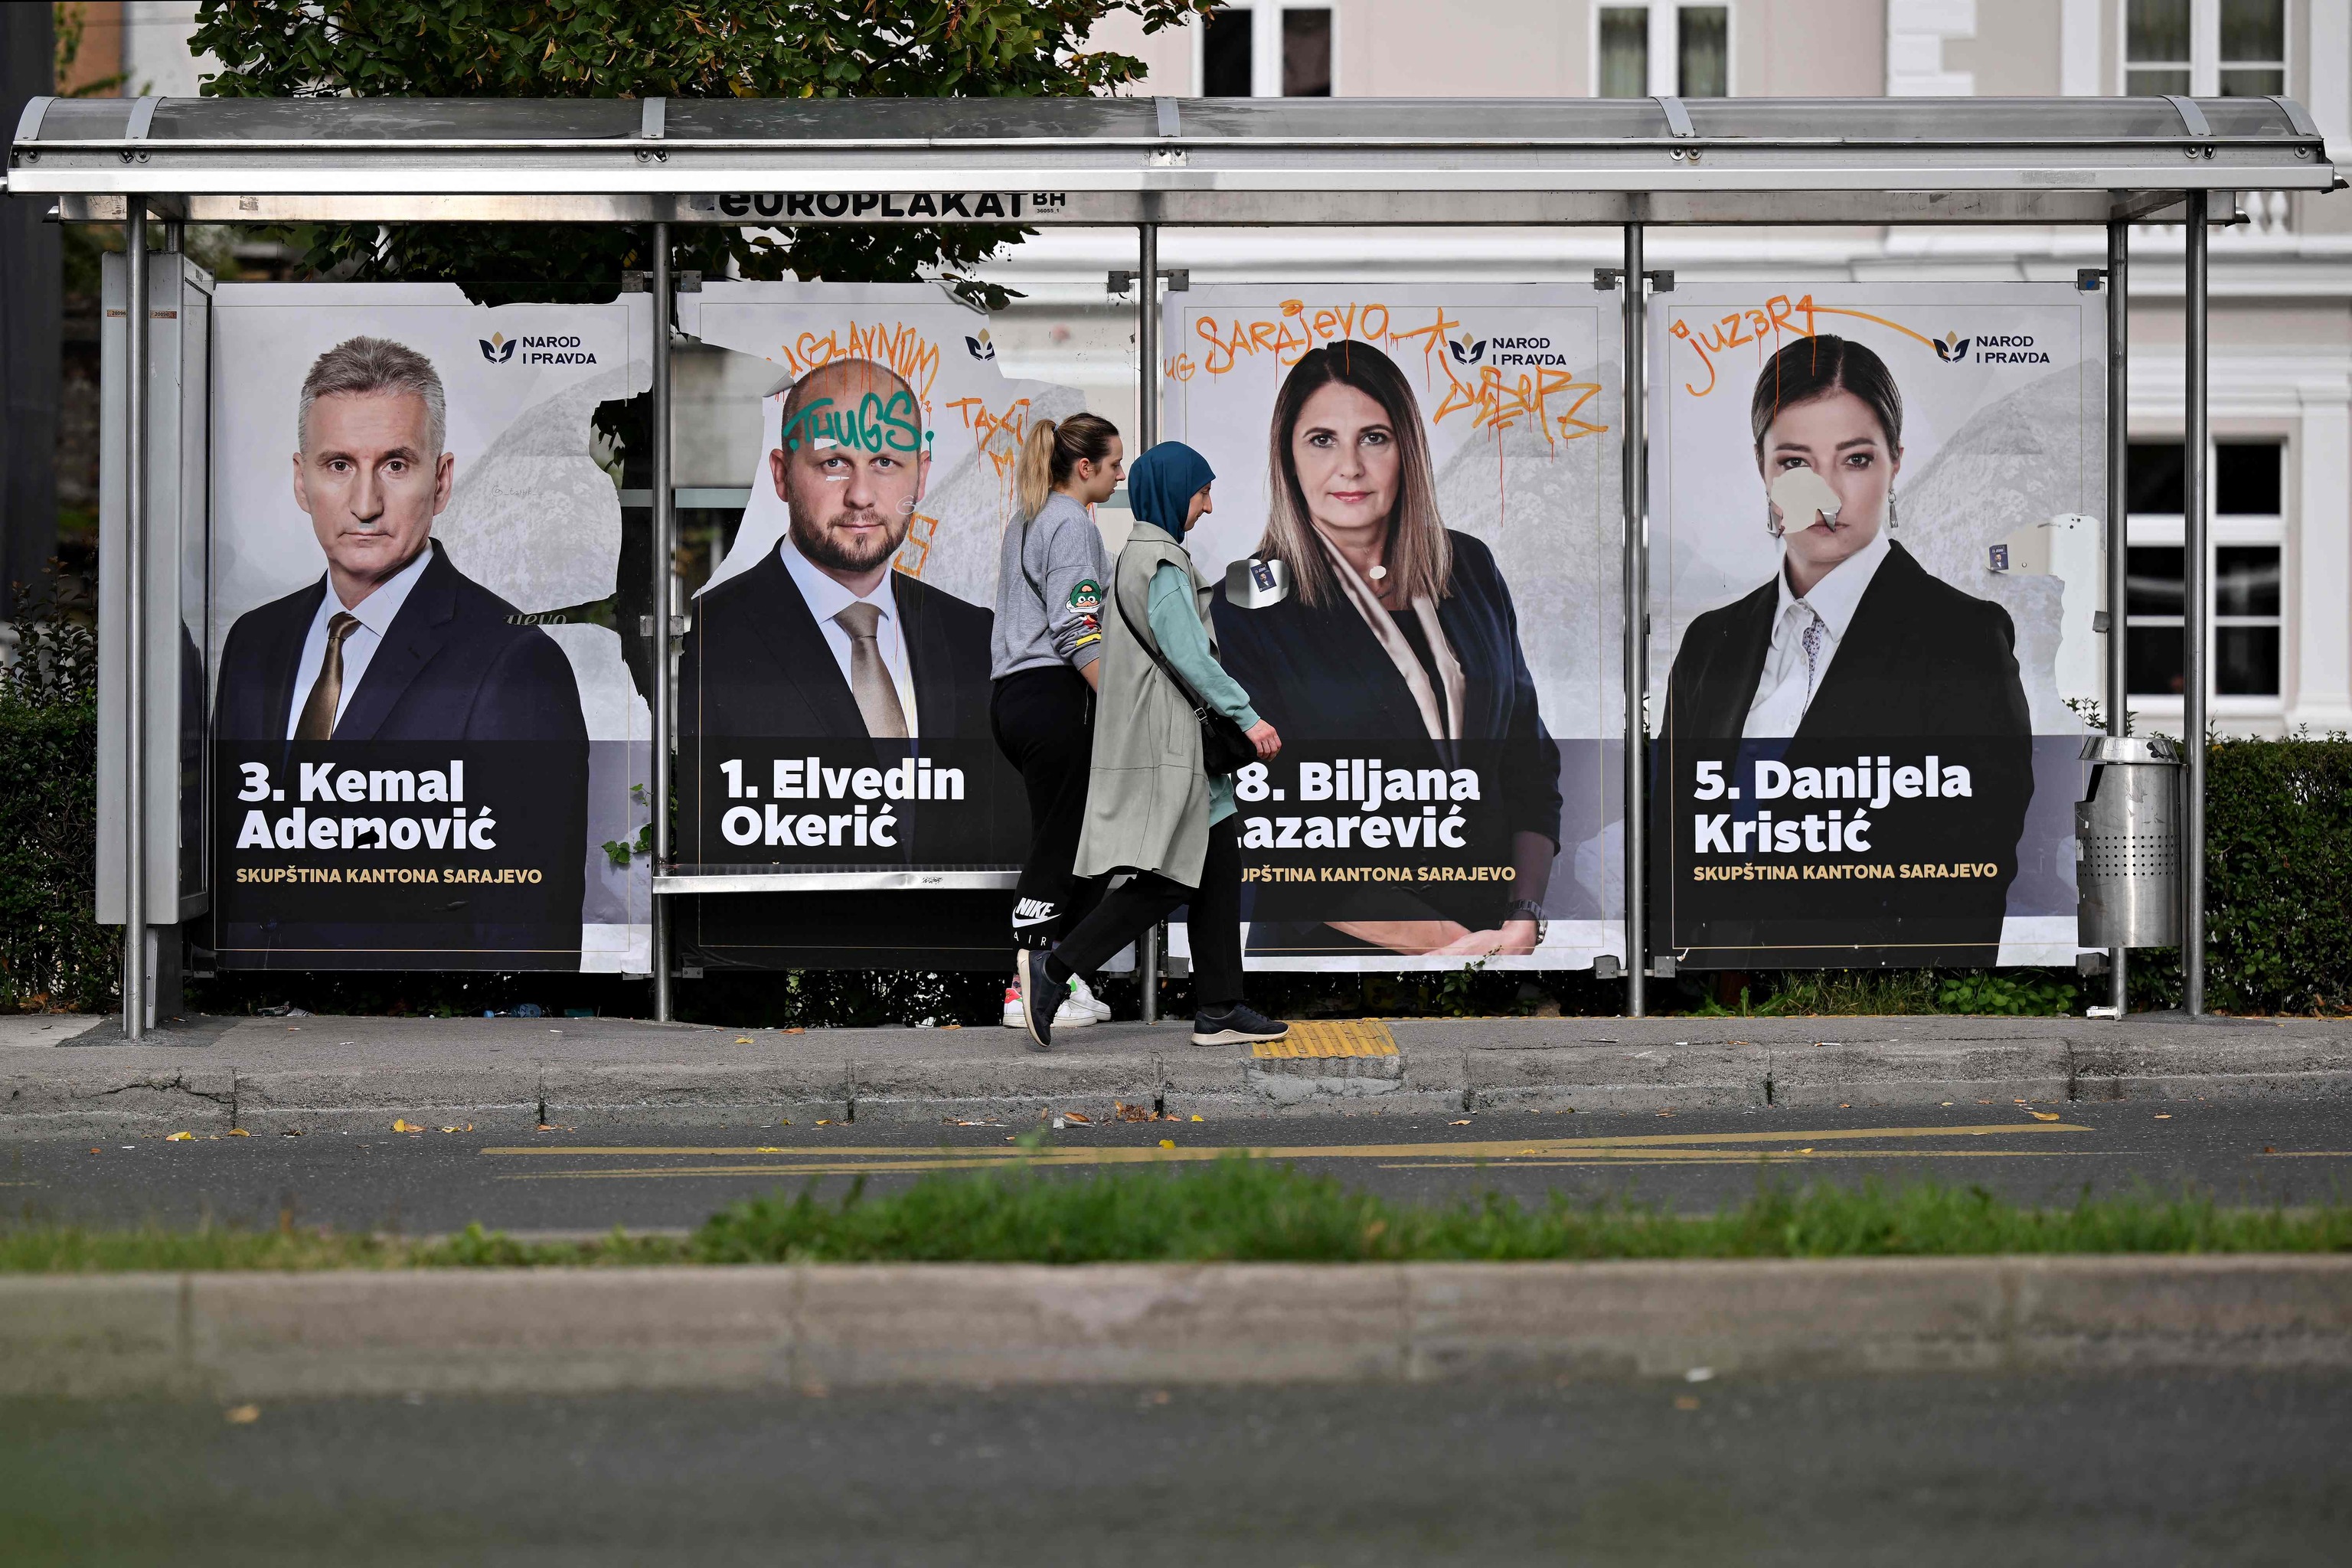 Bosnia celebra elecciones con los ojos puestos en las ambiciones separatistas de la República Srpska